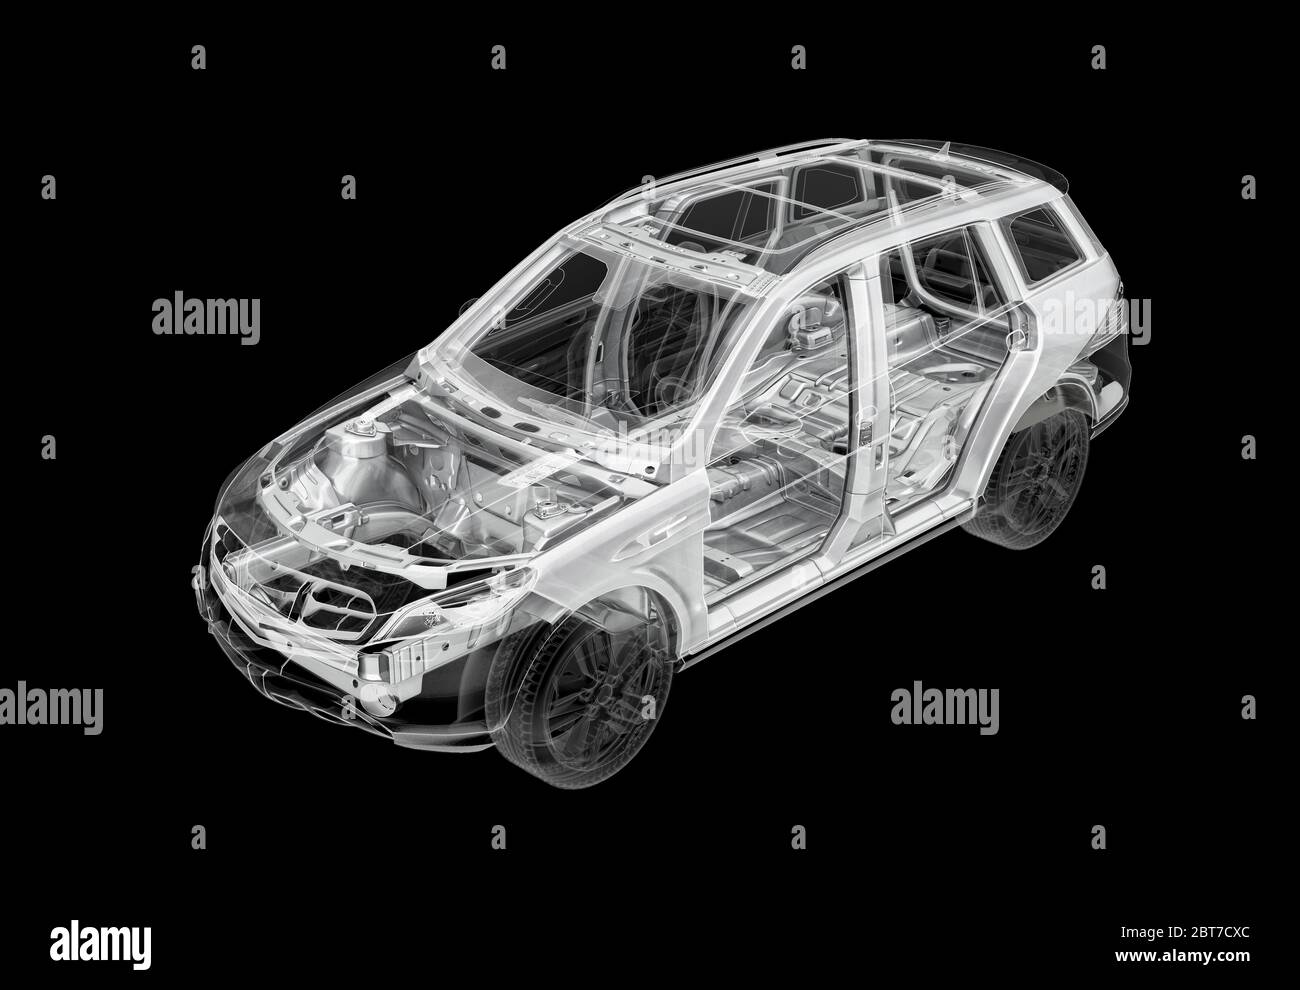 Illustration 3D technique d'une voiture SUV avec effet de rayons X et système de châssis. Vue en perspective sur fond noir. Banque D'Images